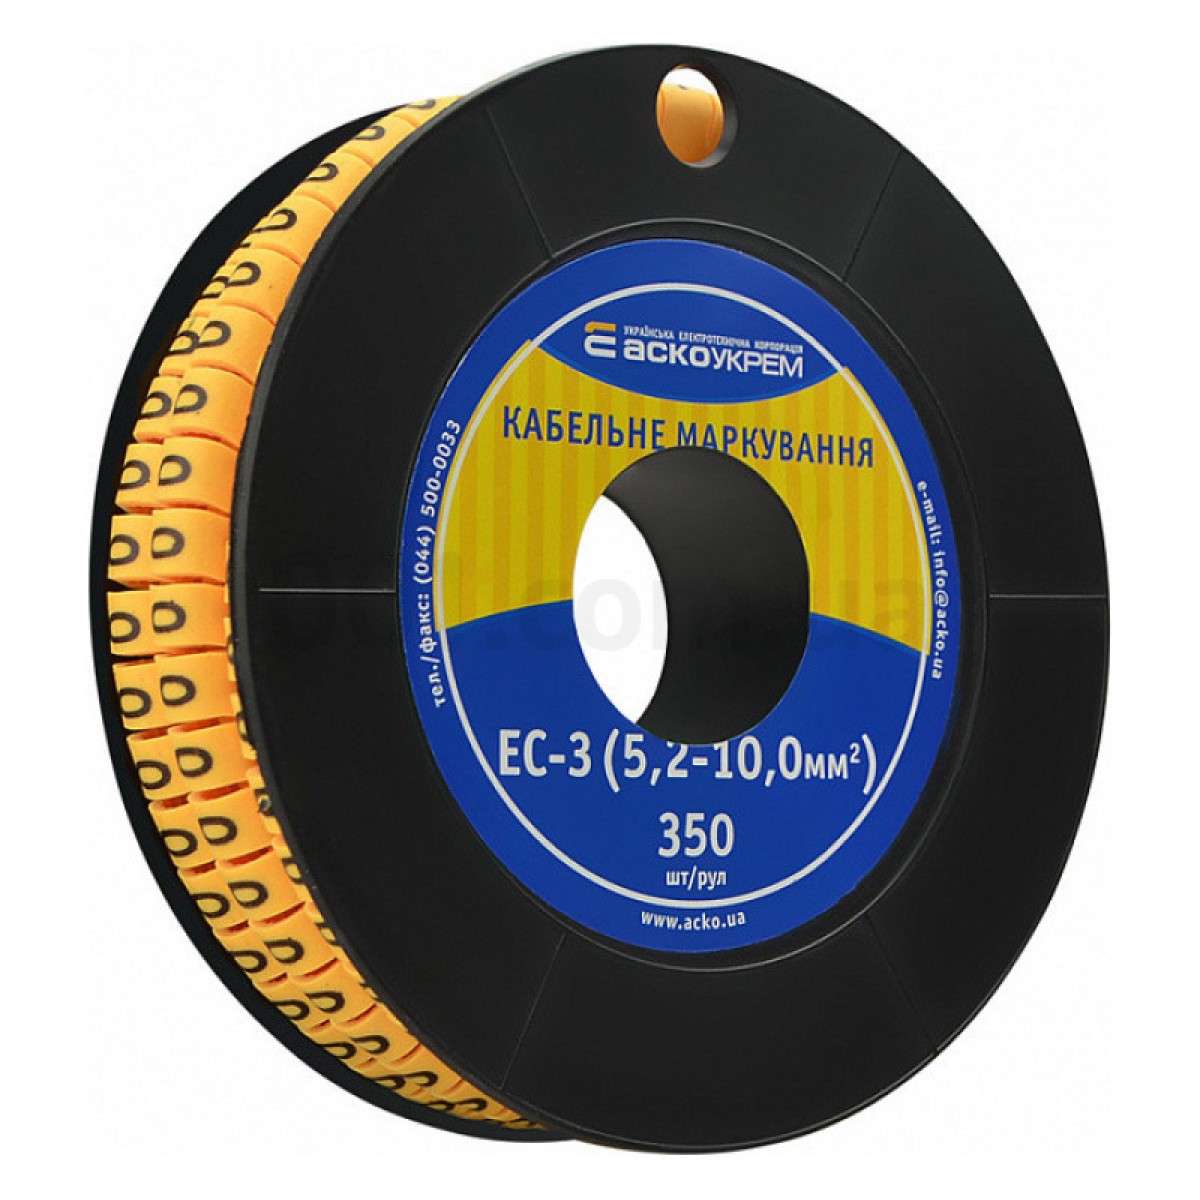 Маркування ЕС-3 для кабелю 5,2-10,0 мм² символ «0» (рулон 250 шт.), АСКО-УКРЕМ 256_256.jpg